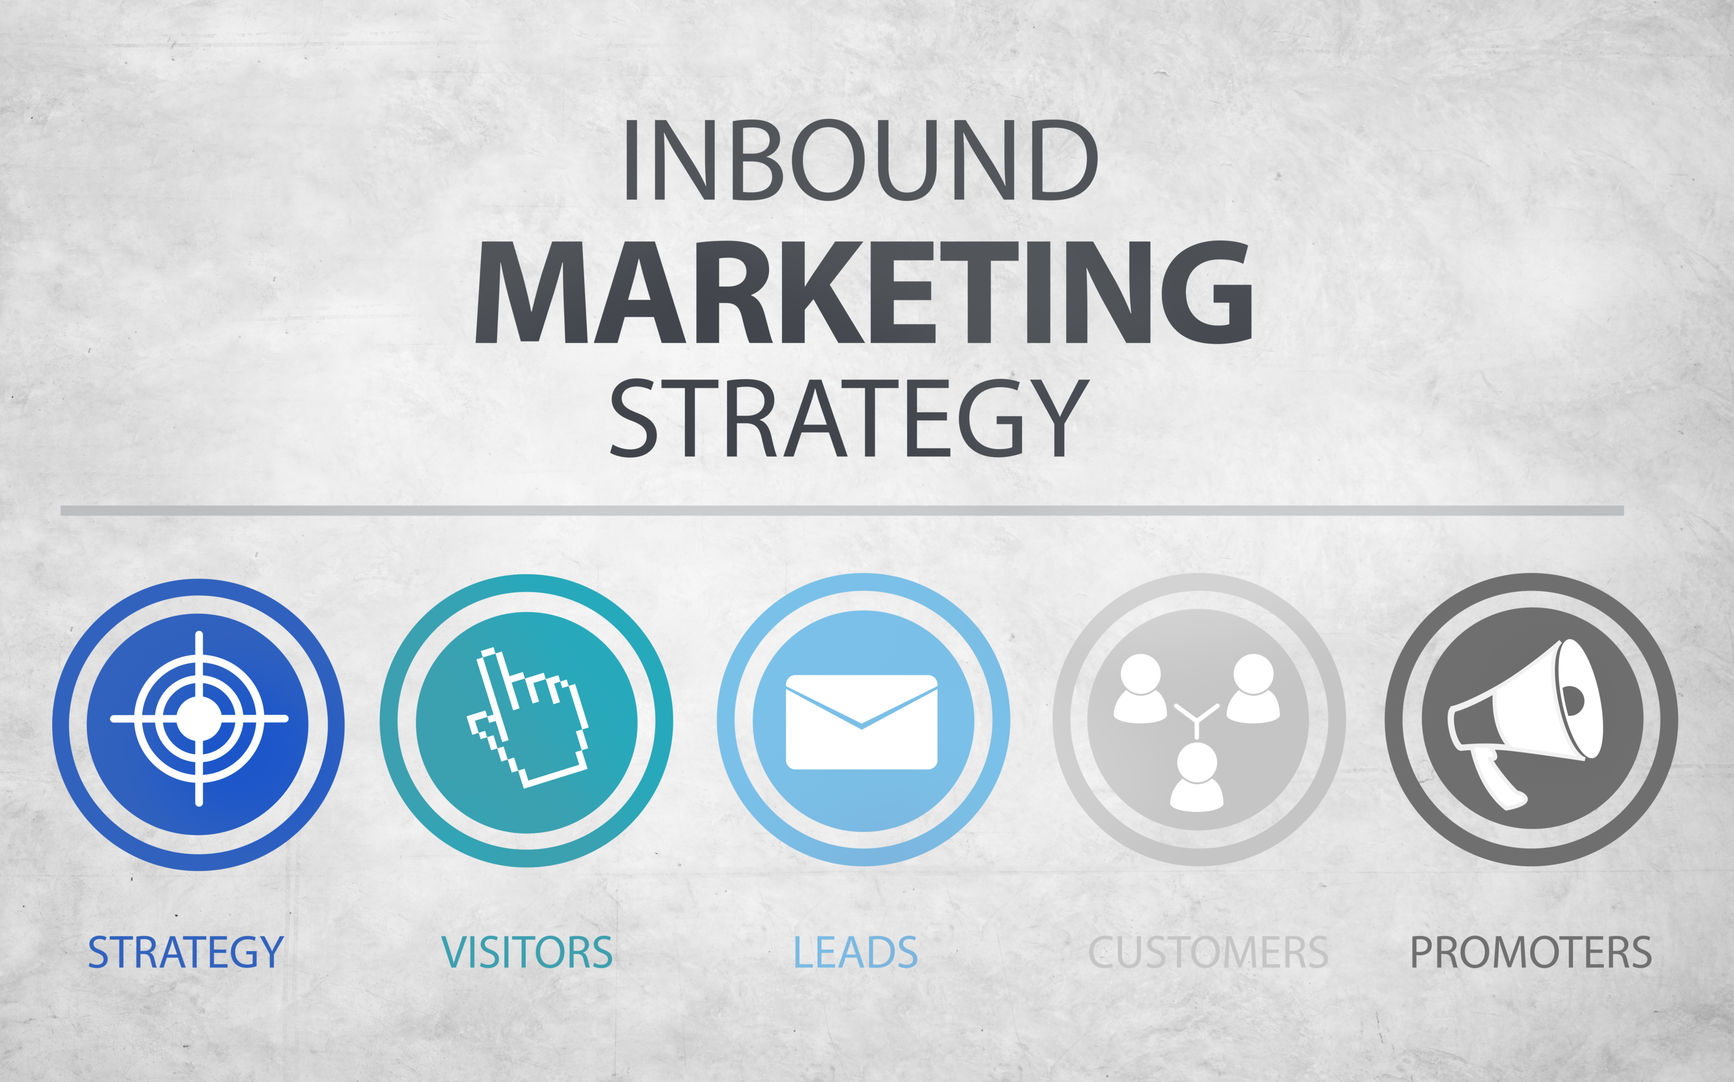 ¿Qué es Inbound Marketing?